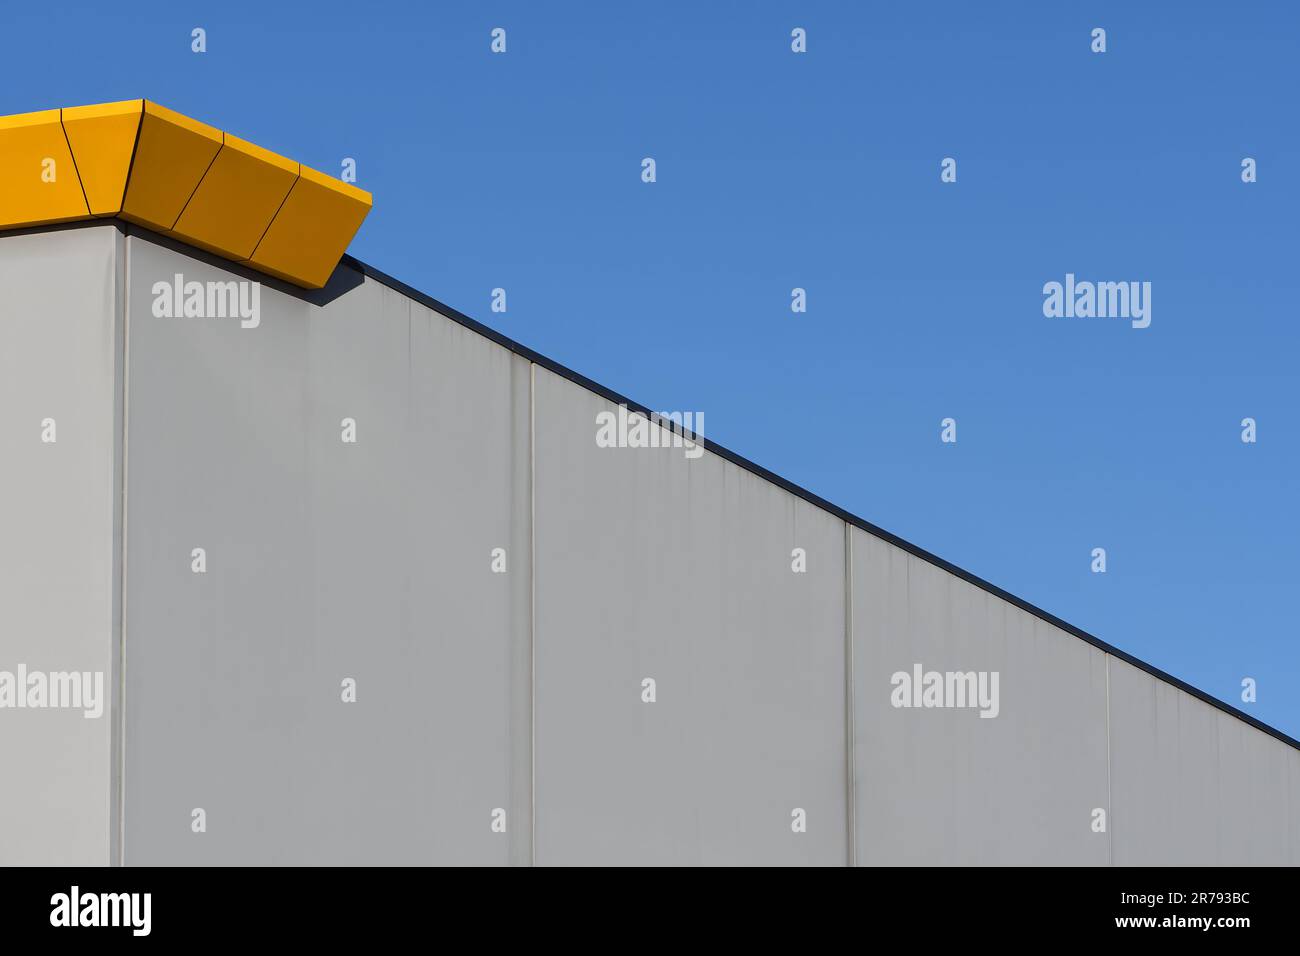 Immagine astratta di un muro di un edificio con cielo blu, metallo arancione, cemento grigio, rifilatura nera con linee diagonali e verticali alla luce del sole Foto Stock